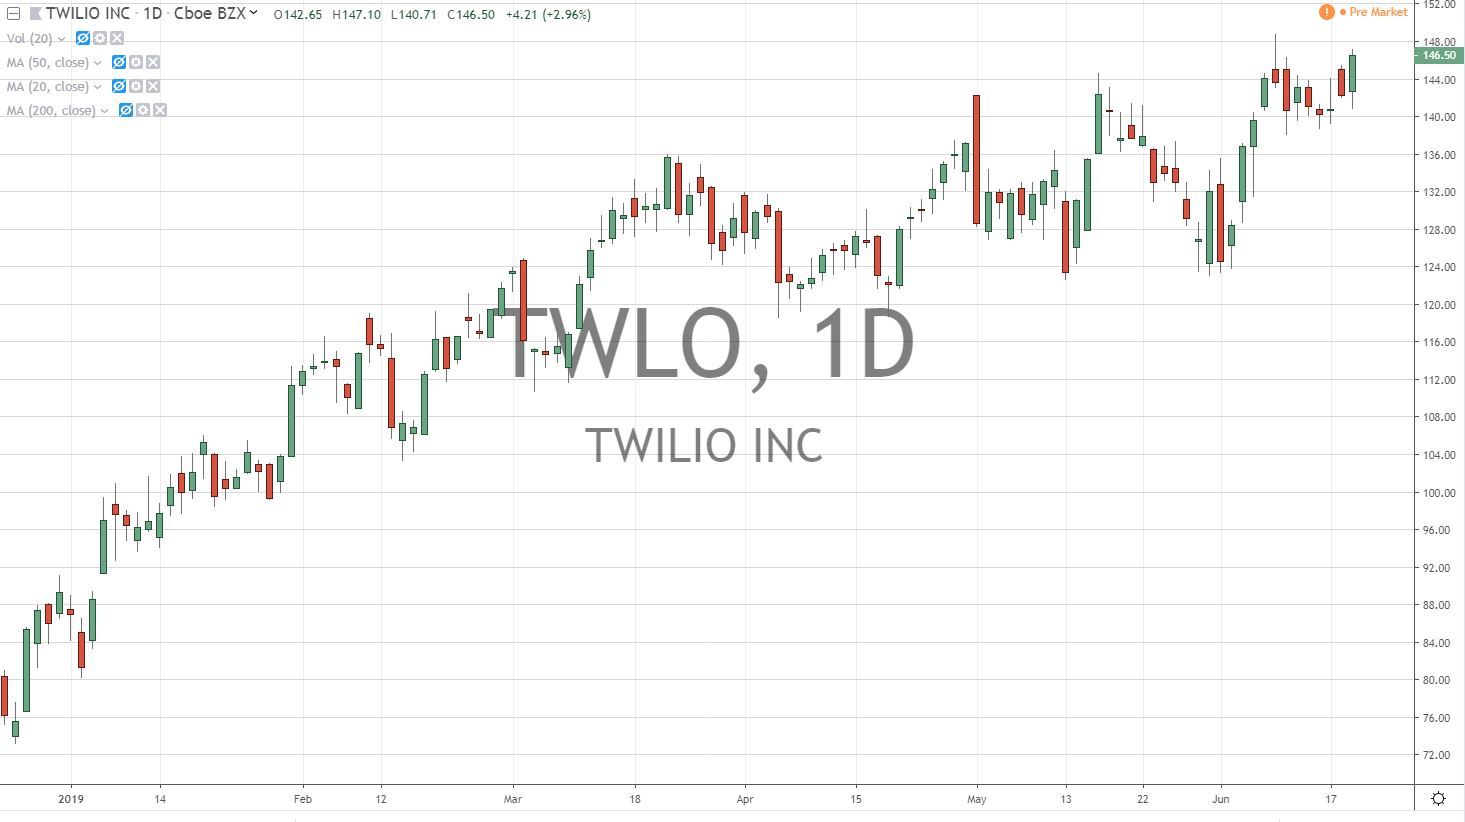 Twilio Inc TWLO Stock Chart 6.20.19